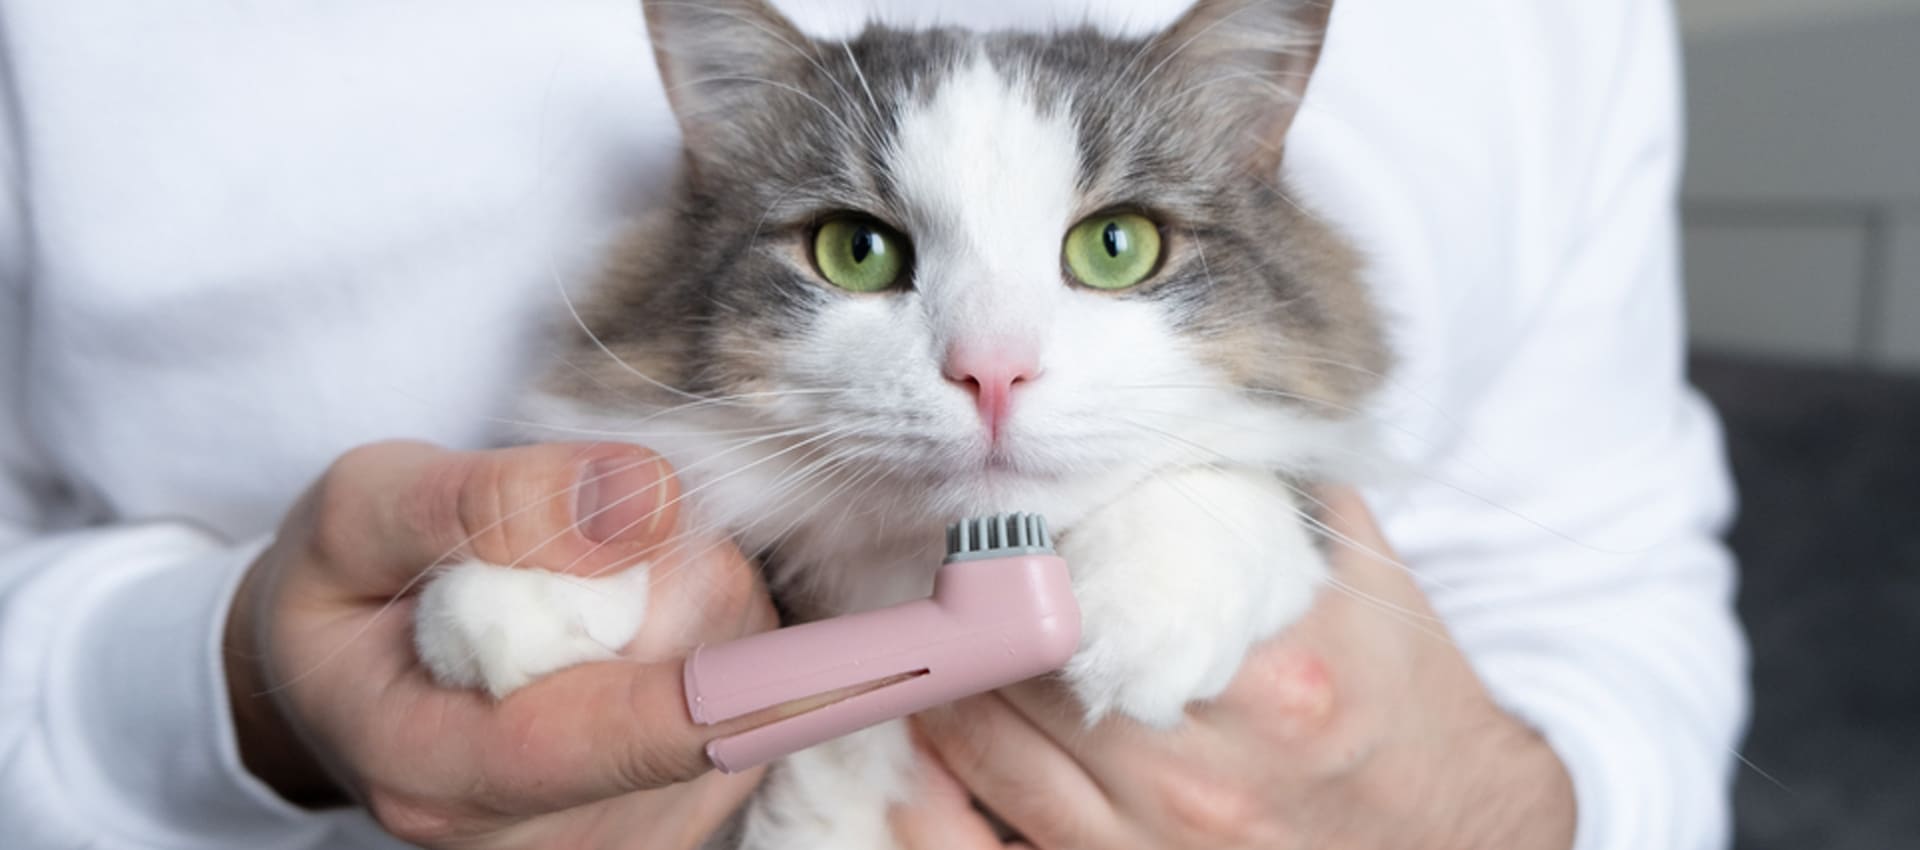 Неприятный запах изо рта у кошки, какие причины и лечение